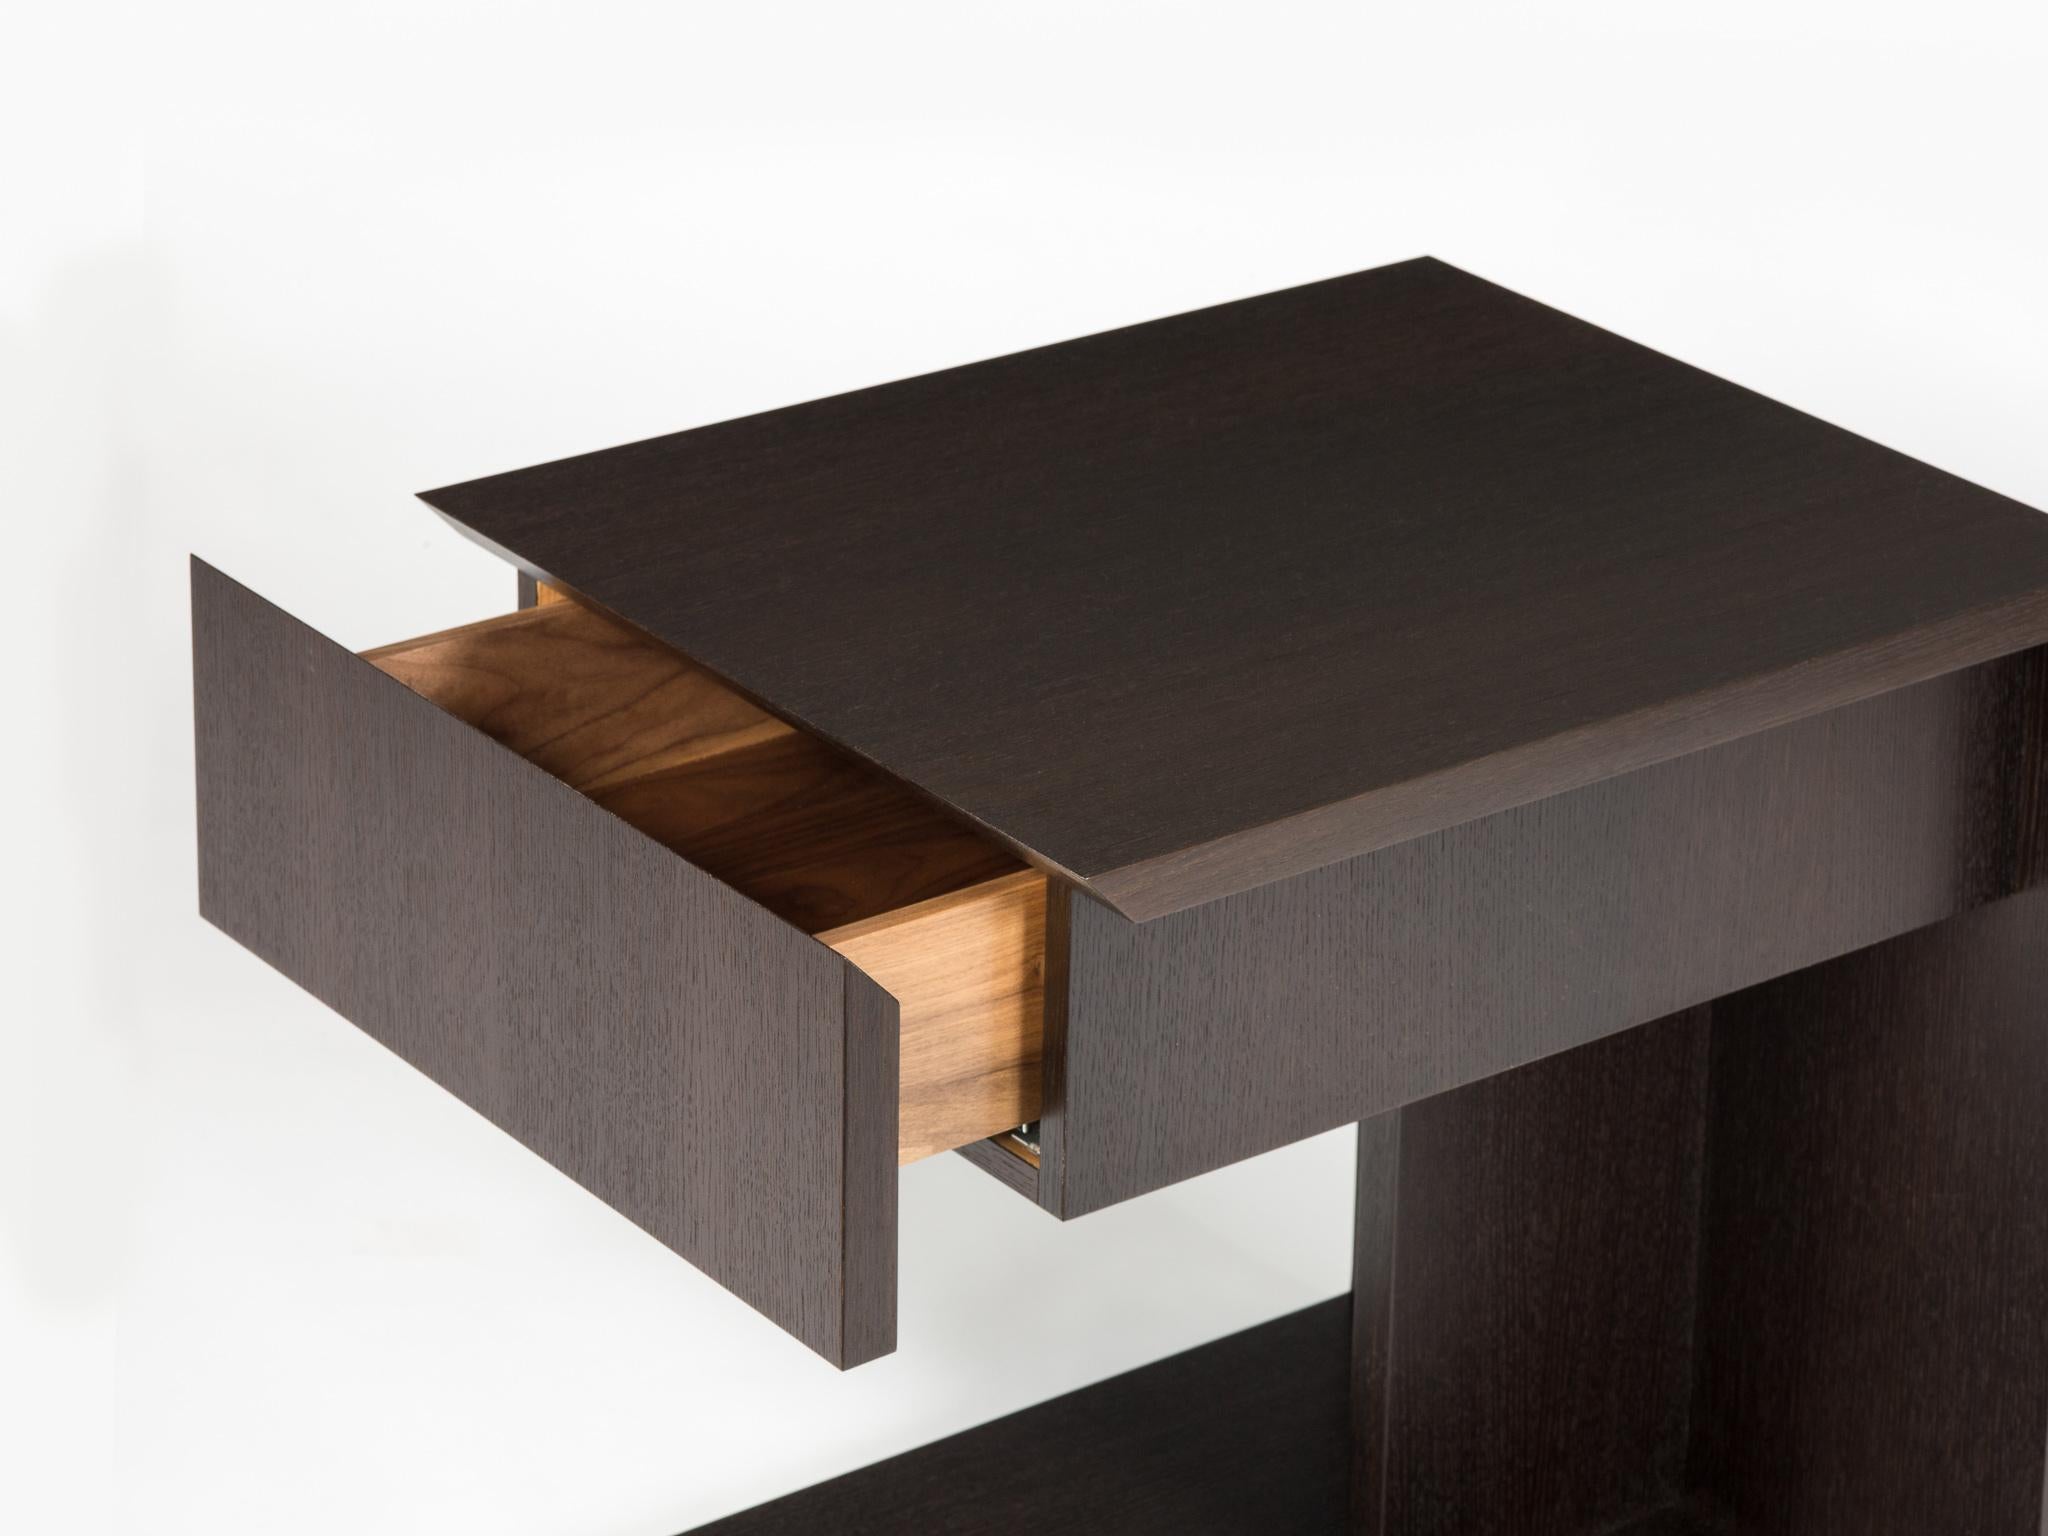 Diese Version unseres modernen Holztischs heißt 